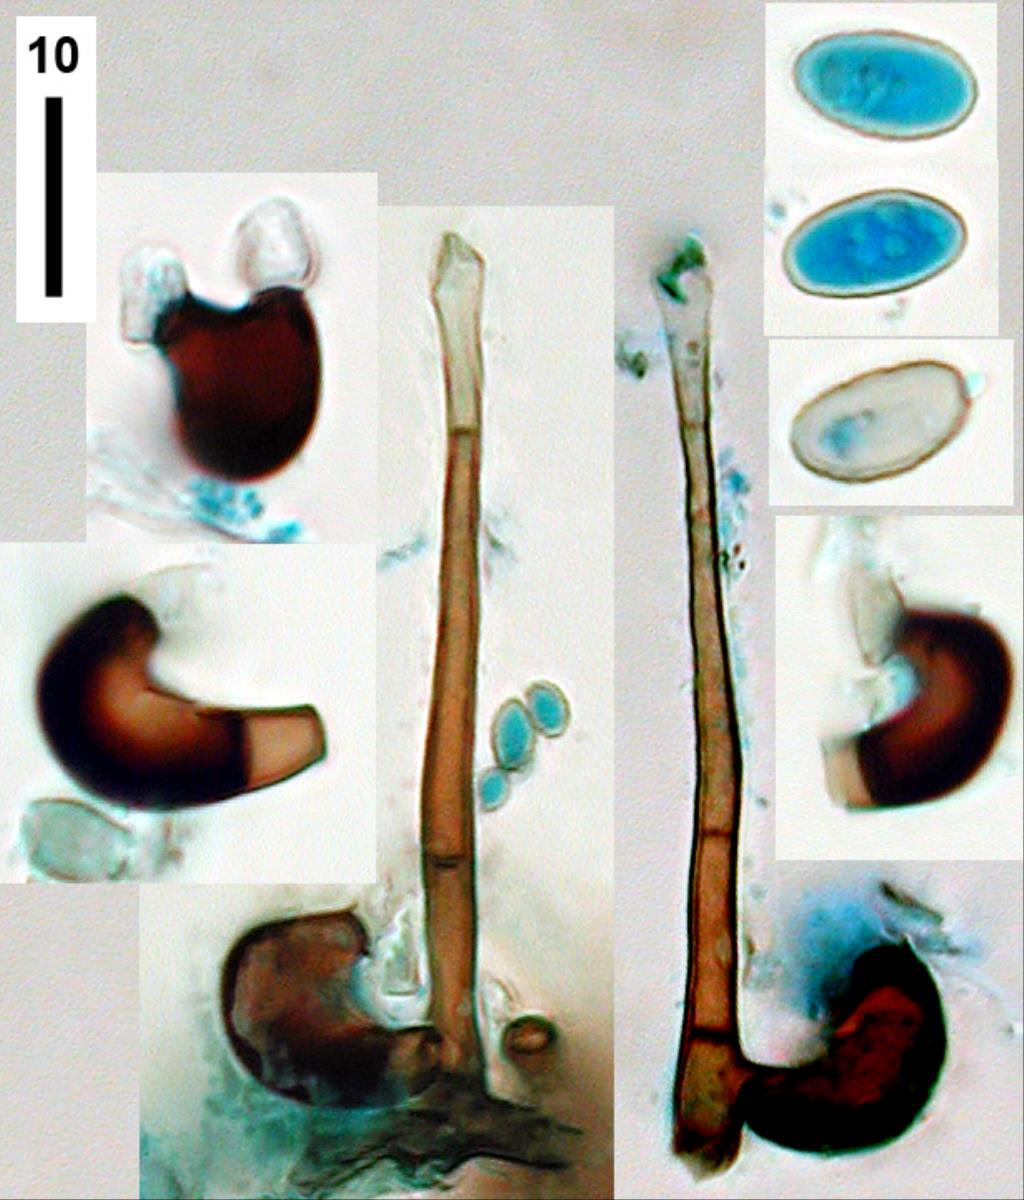 Zygosporium image